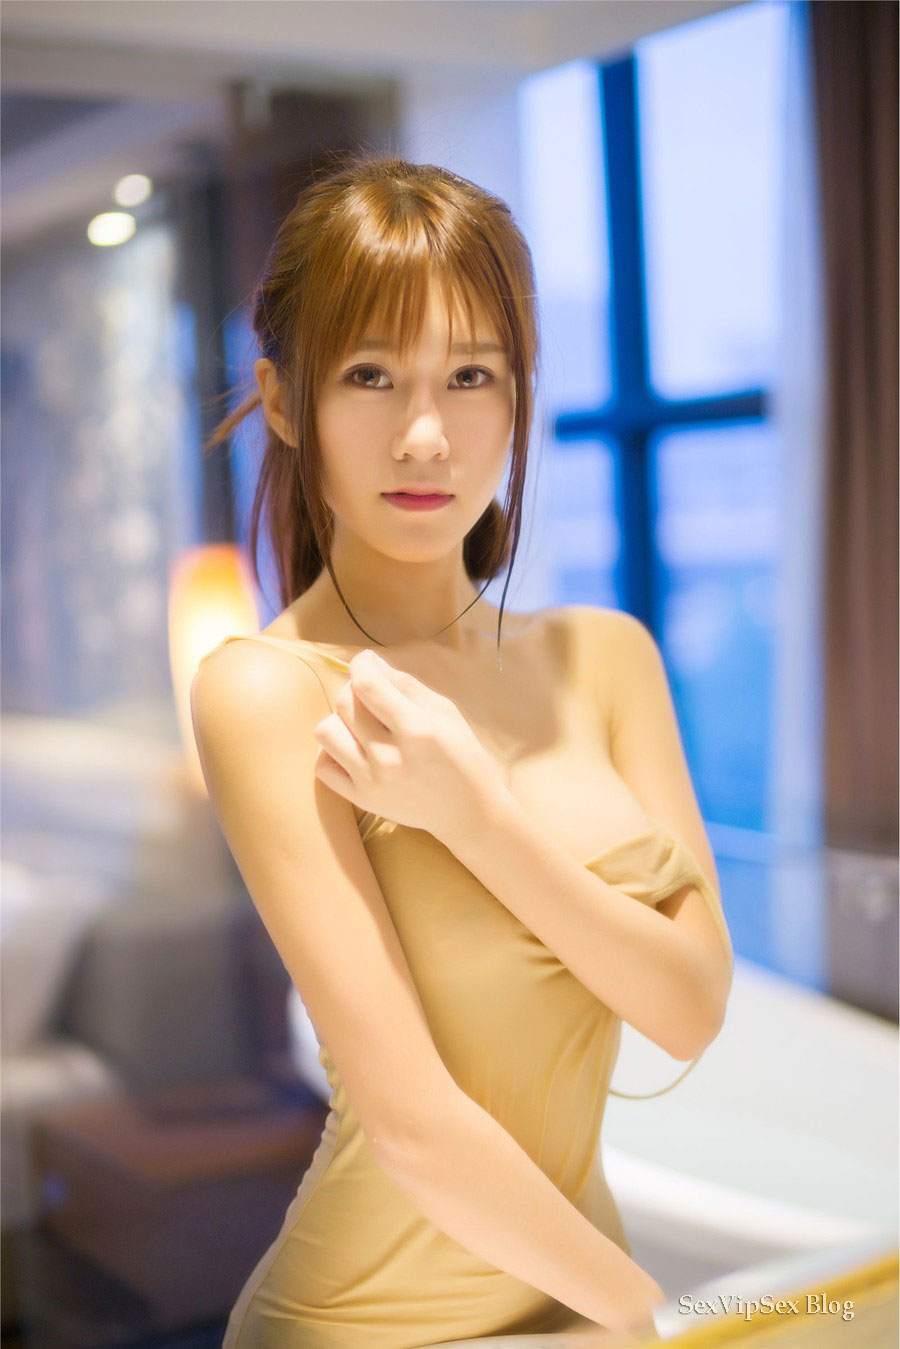 Chinese porn girls big boobs - Best porno